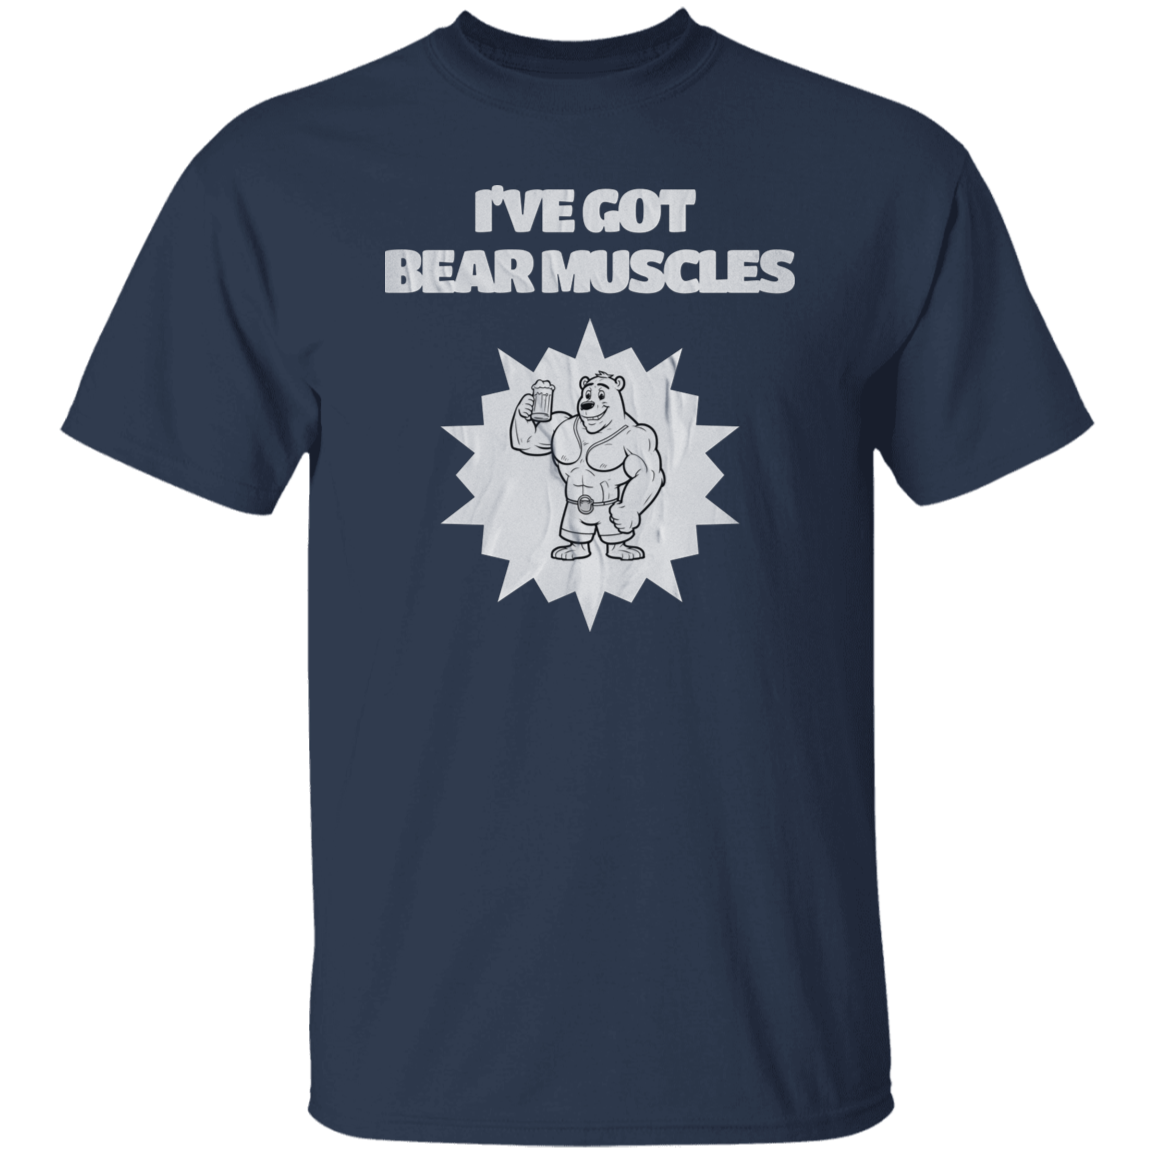 I've Got Bear Muscles T-Shirt